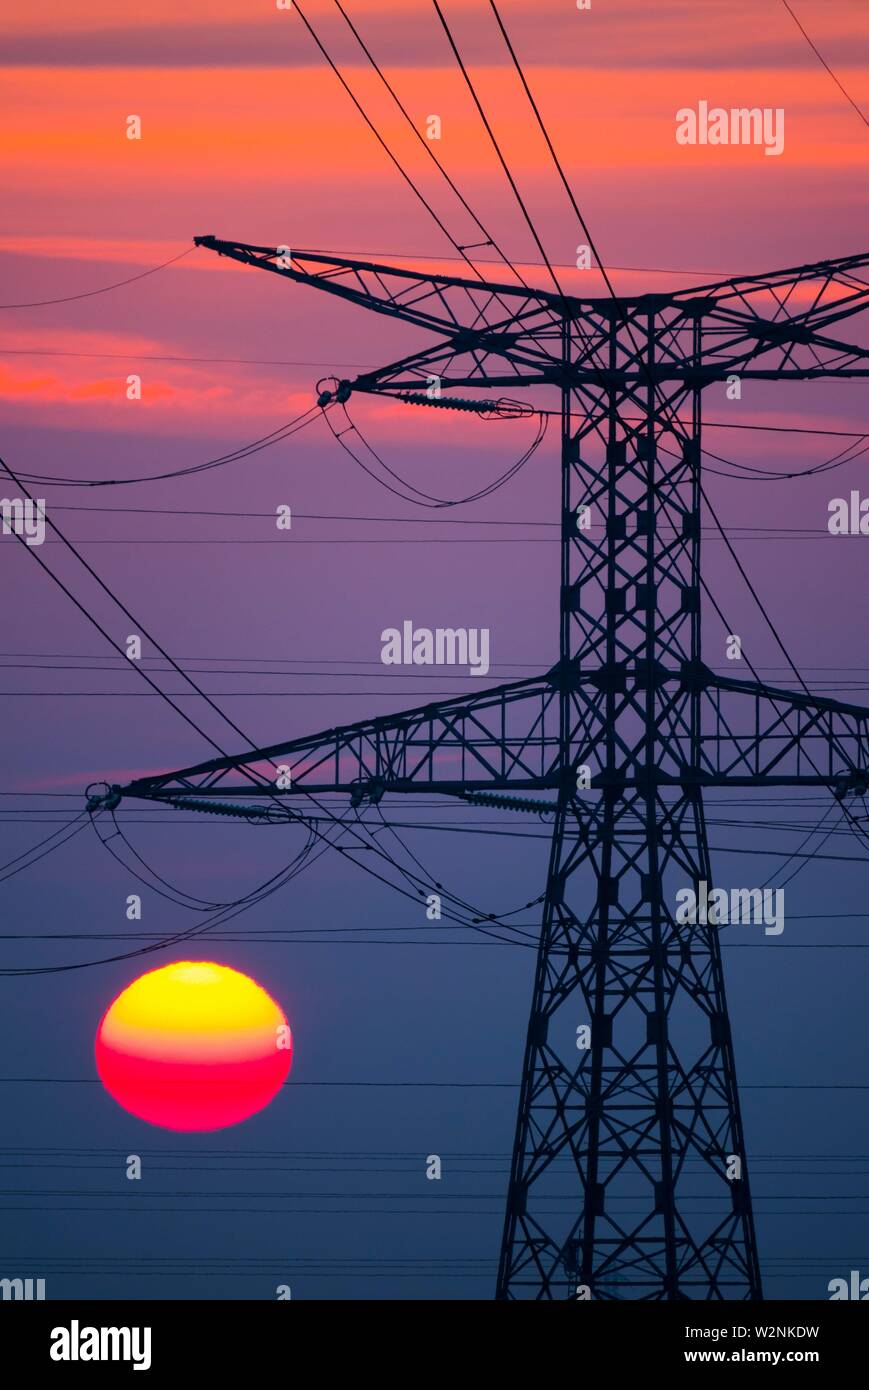 Francia, Loiret (45), Chaingy, 400 000 voltios, líneas eléctricas de alta tensión de transmisión del operador del sistema eléctrico francés RTE (Réseau du Transport Foto de stock